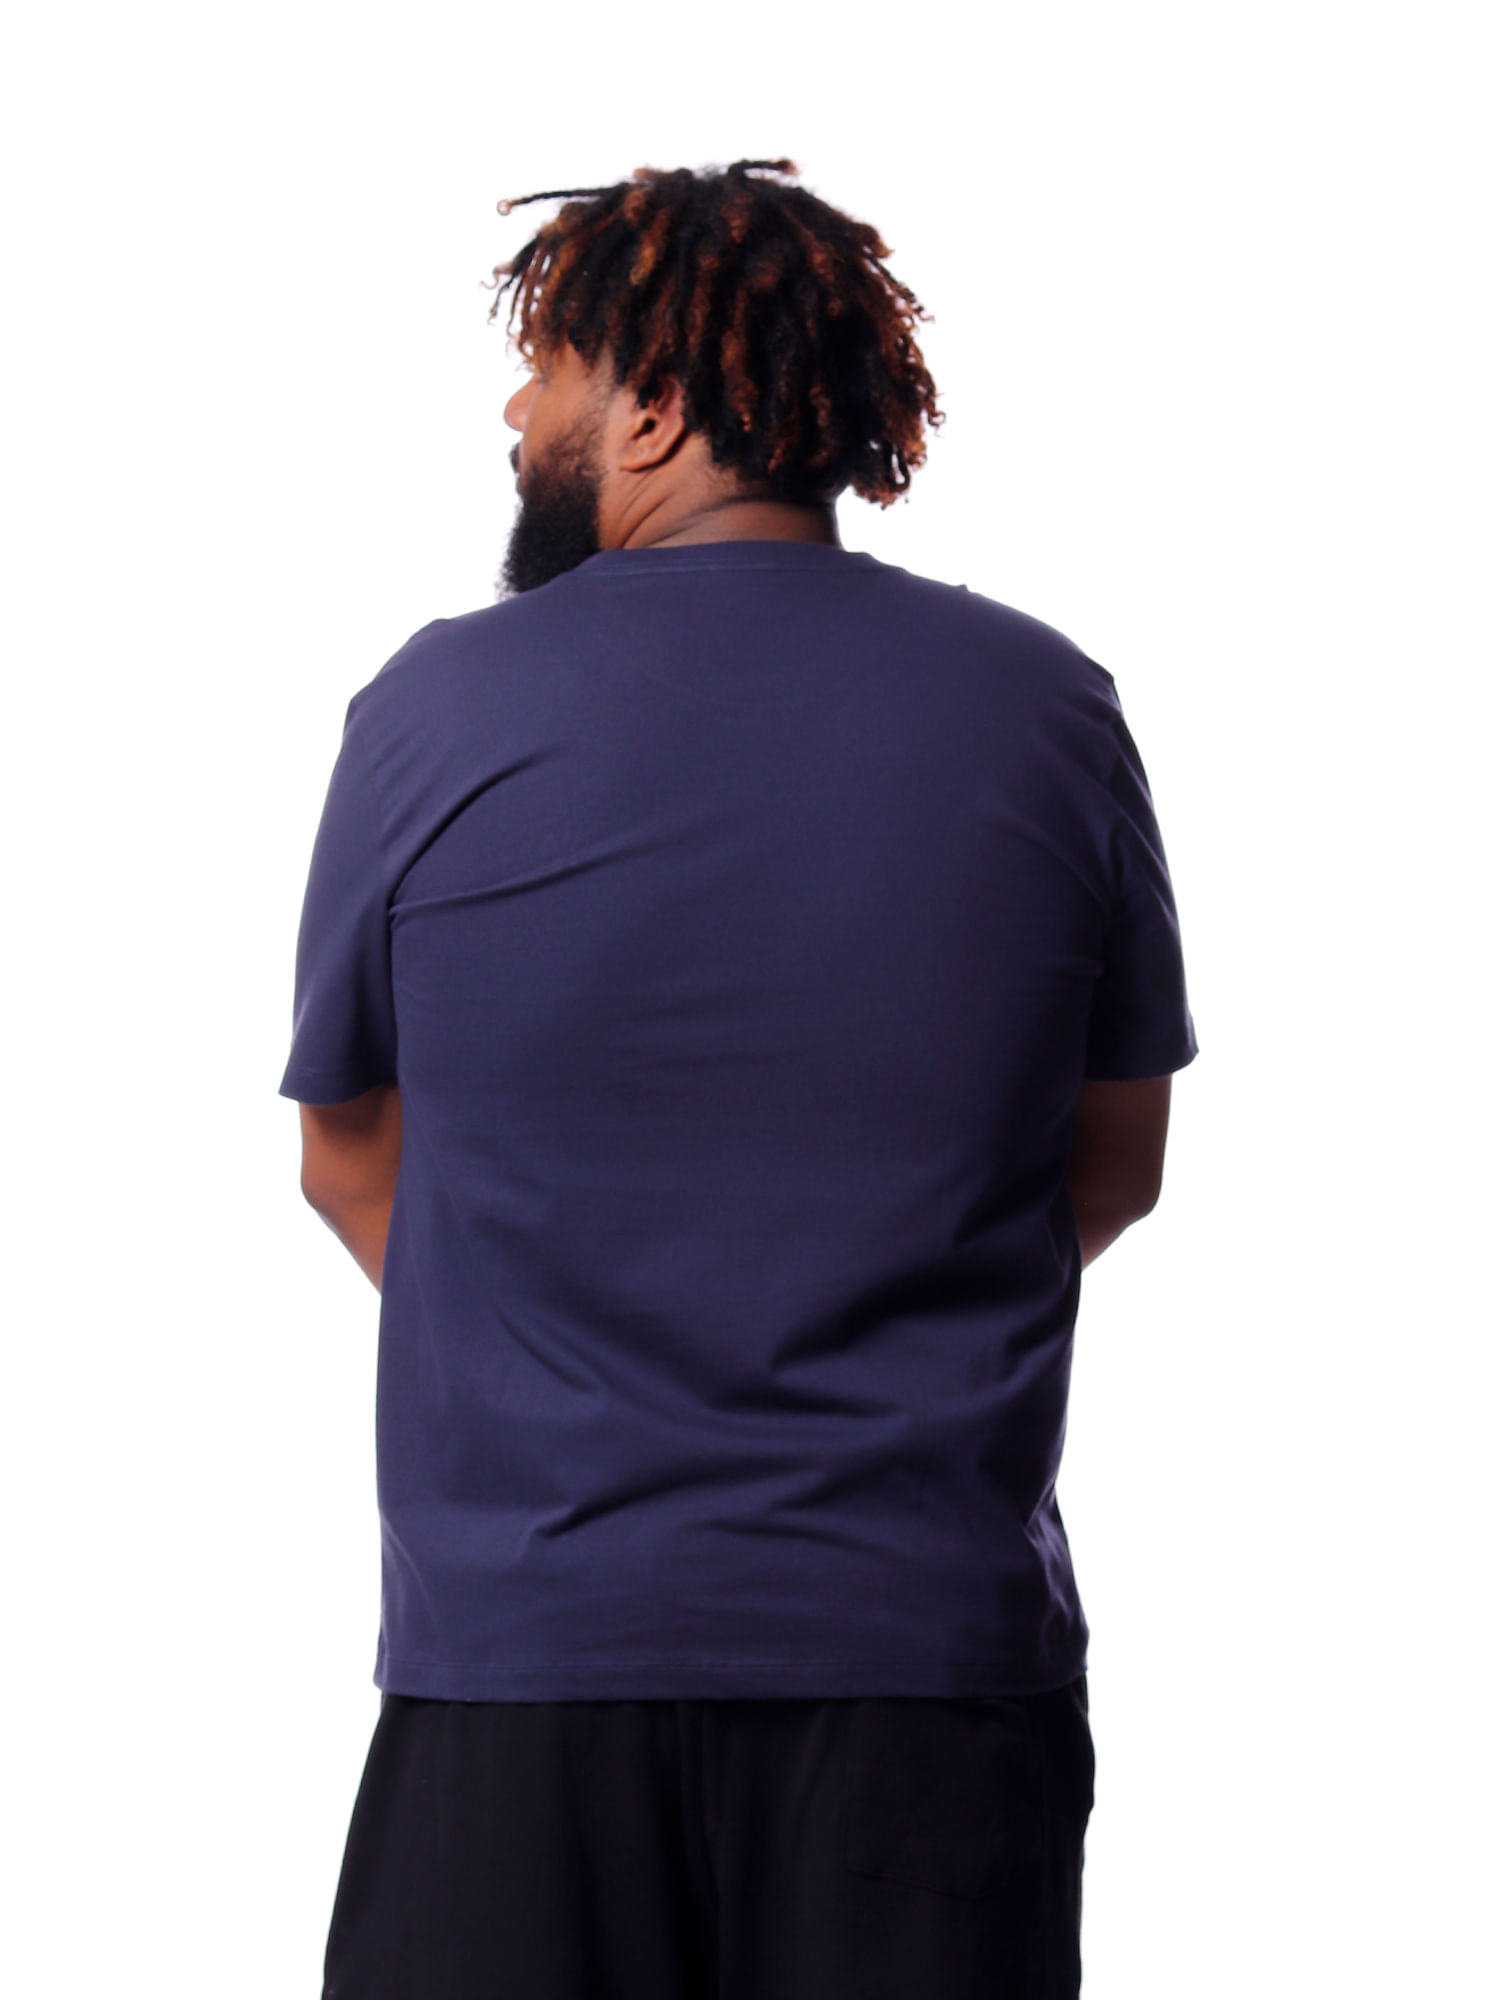 Camiseta-new-era-plus-size-mlb-new-york-yankees-Azul-marinho